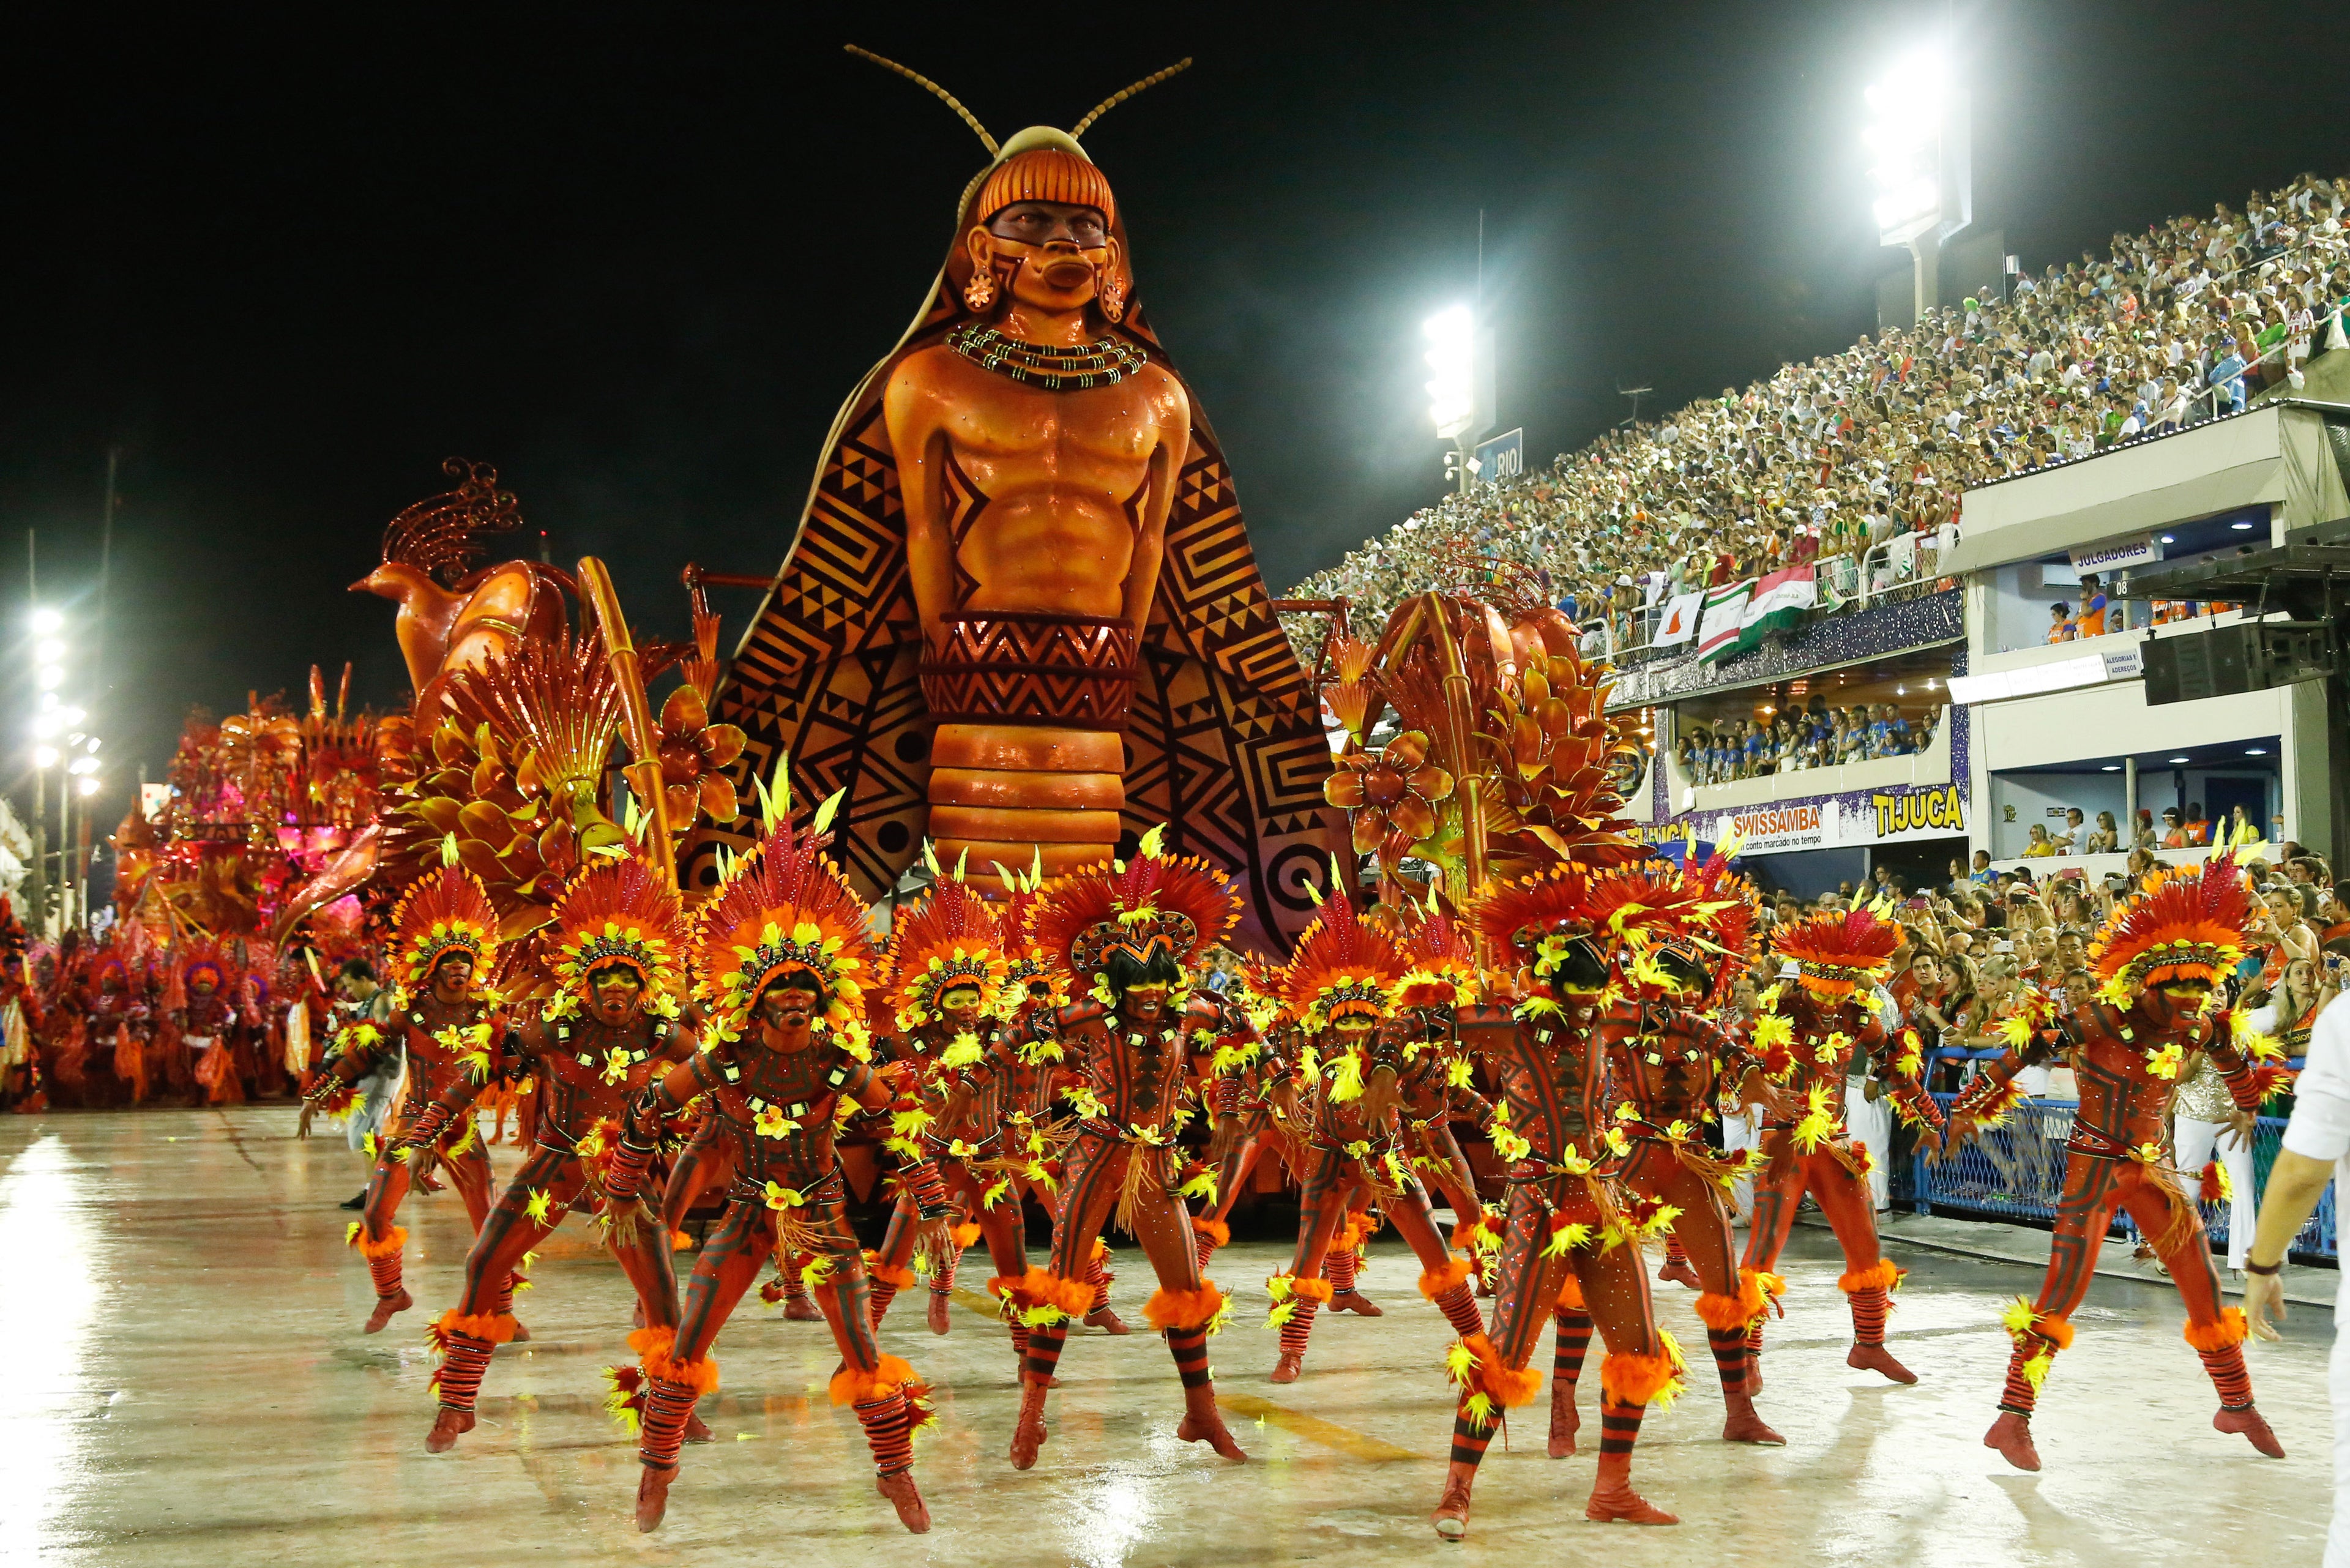 Rio Carnival 2015 - Day 1